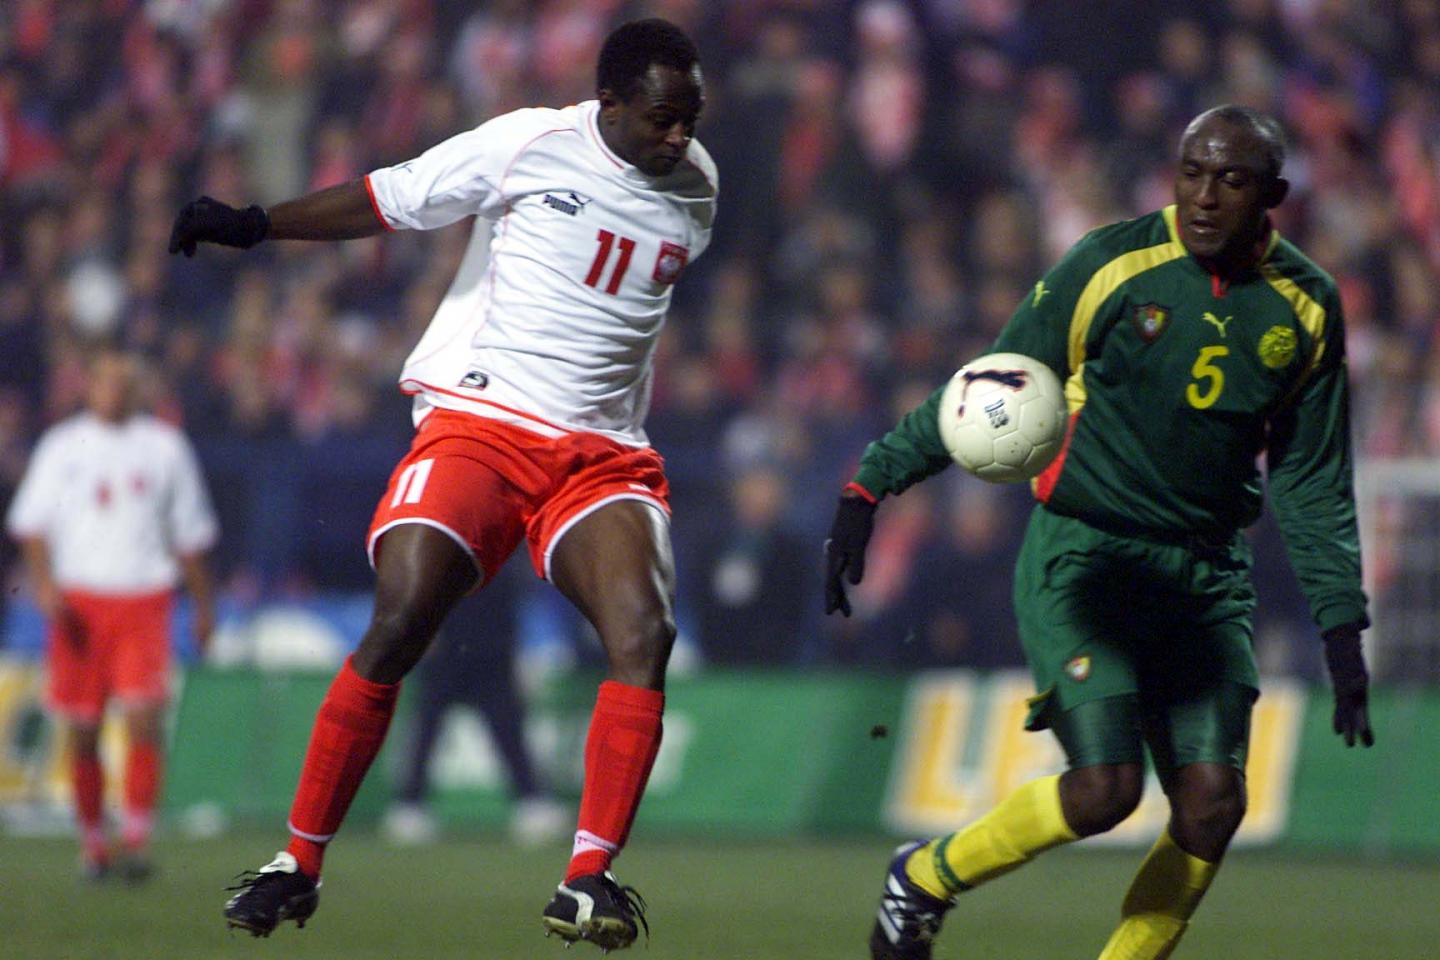 Taka sytuacja w historii naszego futbolu zdarzyła się po raz pierwszy. W meczu z drużyną z Afryki w biało-czerwonych barwach zagrał piłkarz urodzony na tym kontynencie. Akcję Emmanuela Olisadebe usiłuje przerwać Raymond Kalla.